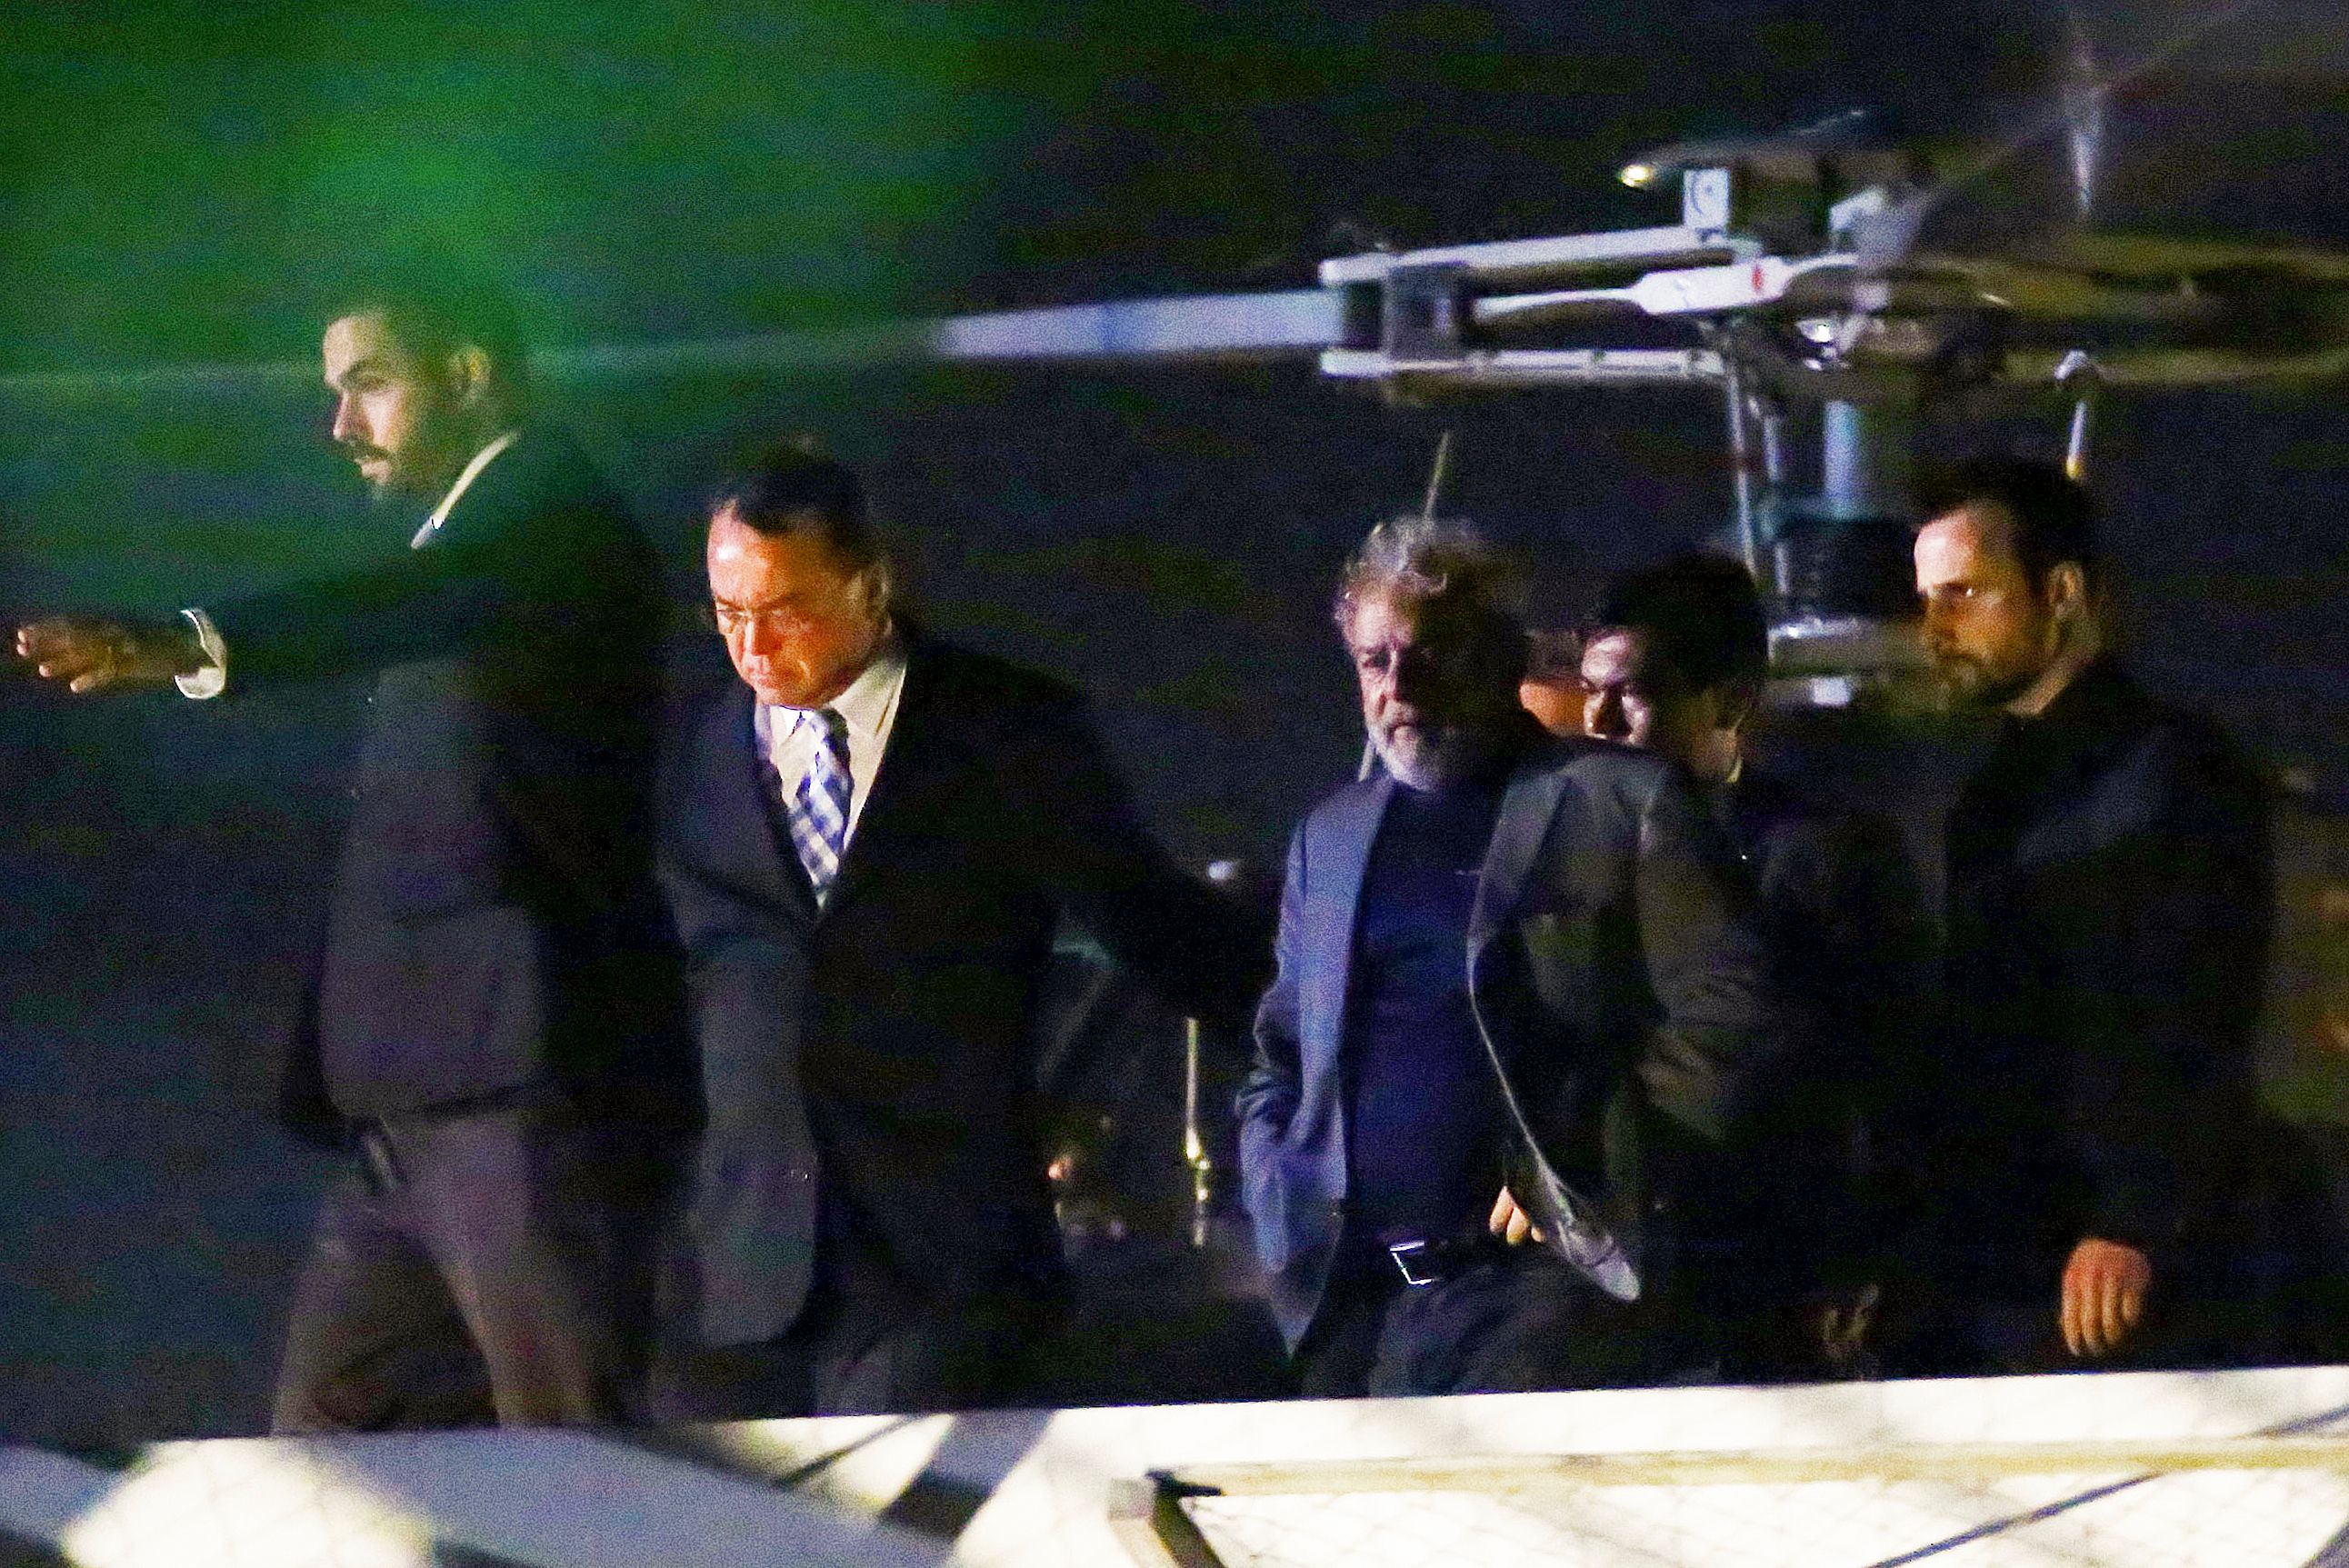 وصول الرئيس البرازيلى الأسبق إلى مقر الشرطة